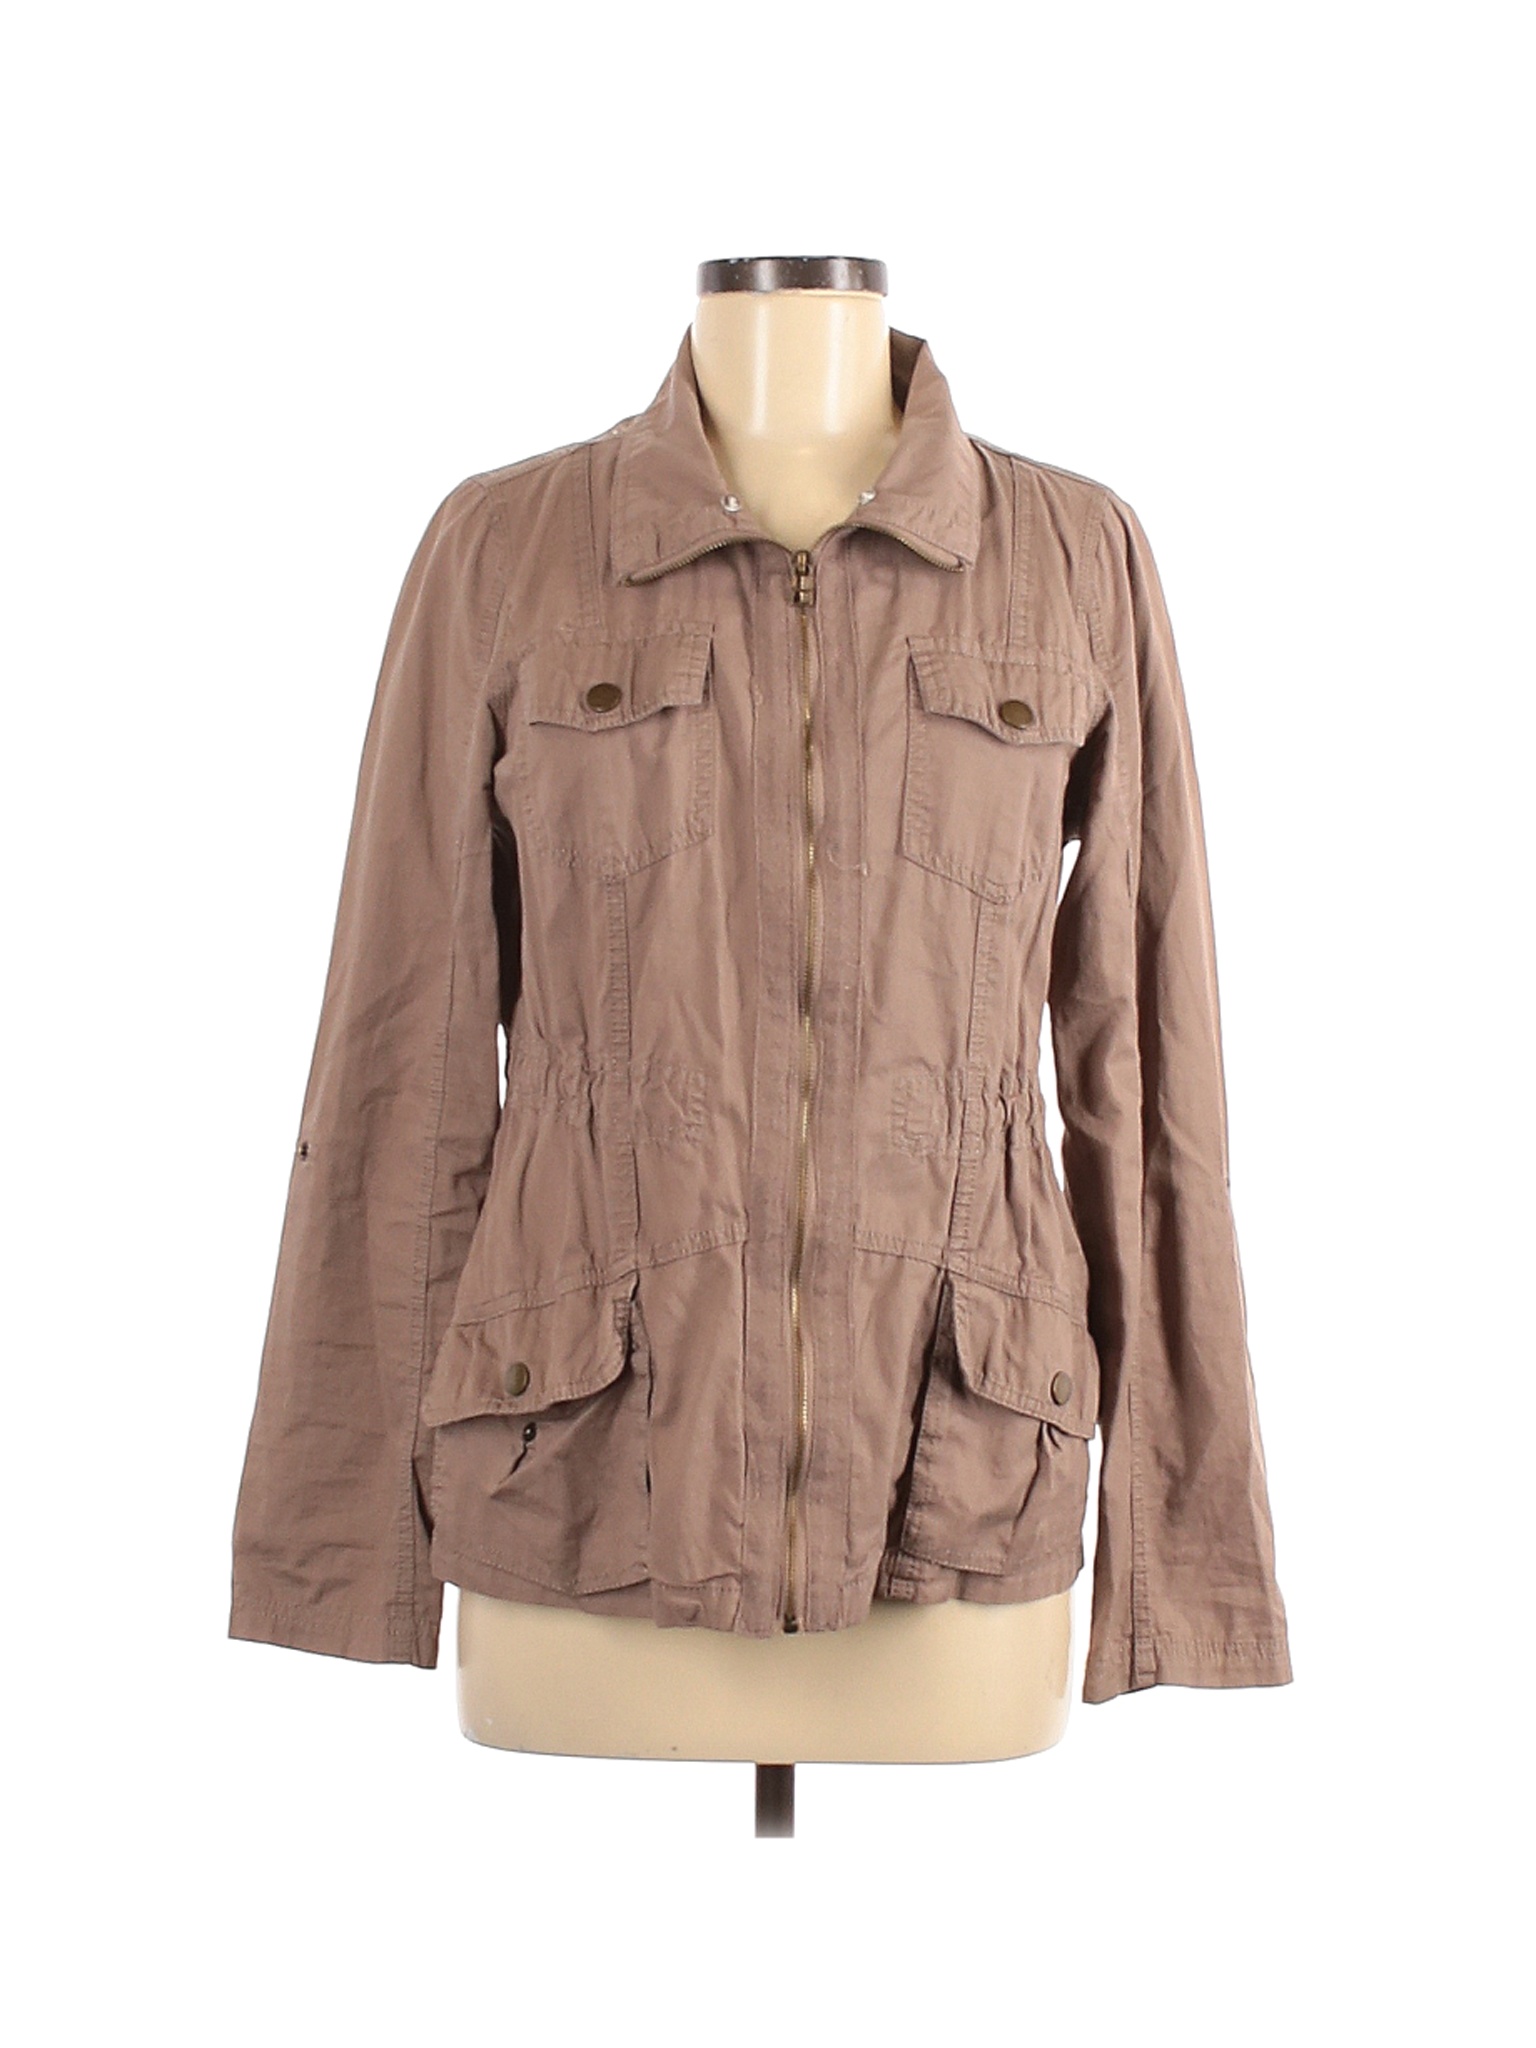 Daytrip Women Brown Jacket M | eBay